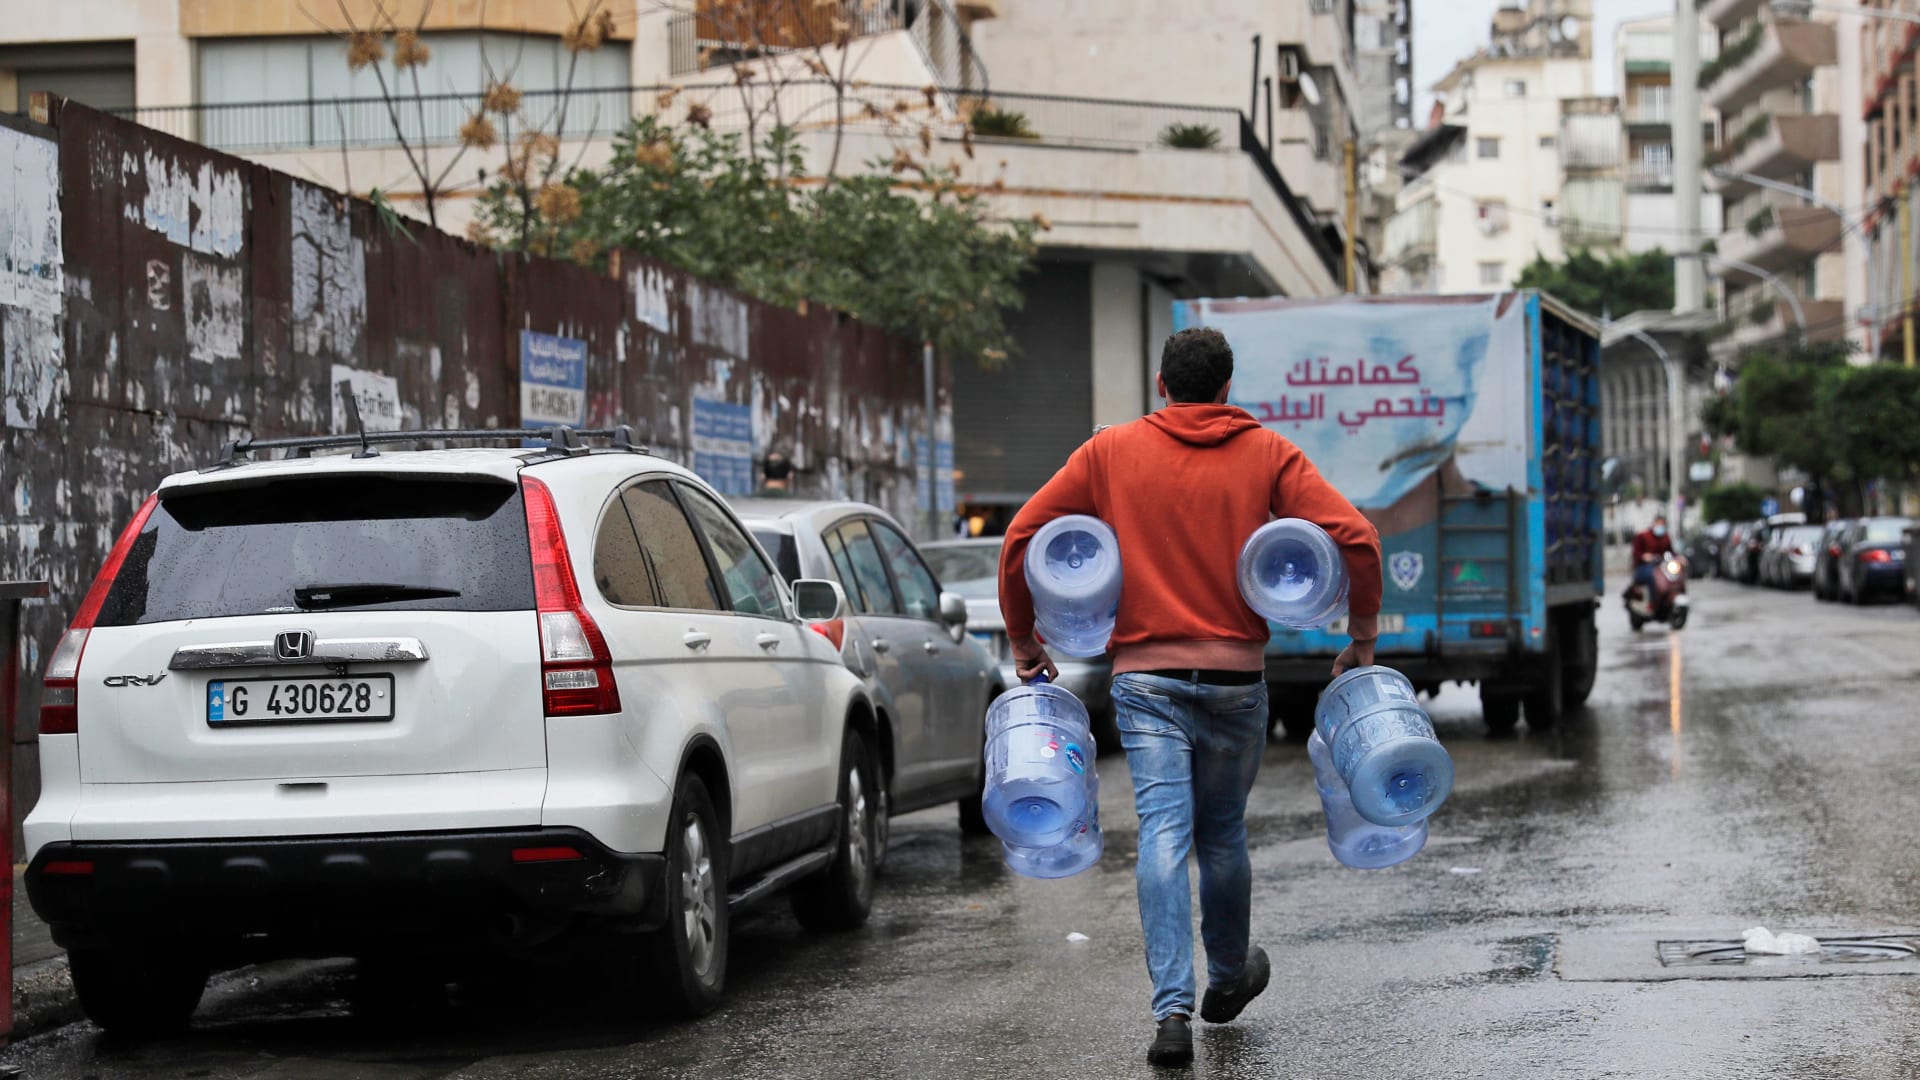 شاب يسير مع جالون ماء فارغ في شارع شبه مهجور في العاصمة بيروت، حيث يدخل لبنان يومه الأول من الإغلاق الصارم الذي فرضته السلطات في محاولة لوقف انتشار فيروس كورونا، في 14 كانون الثاني (يناير) 2021